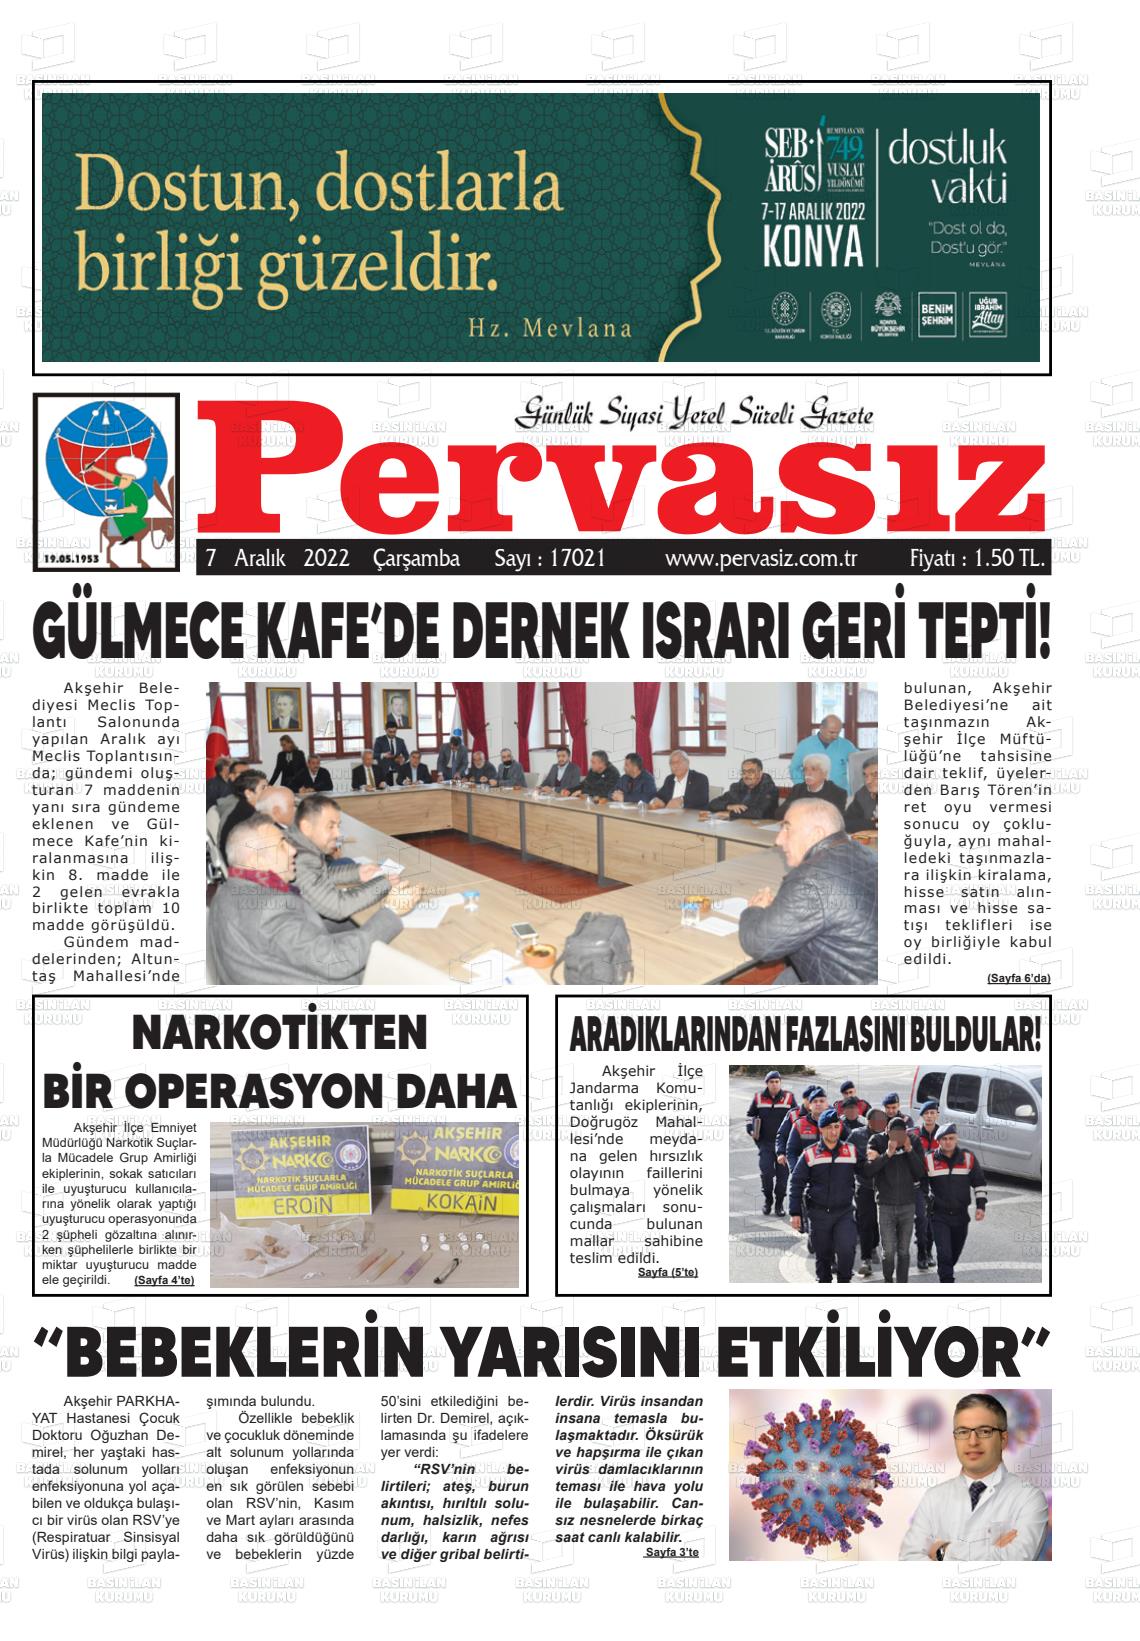 07 Aralık 2022 Konya Pervasız Gazete Manşeti